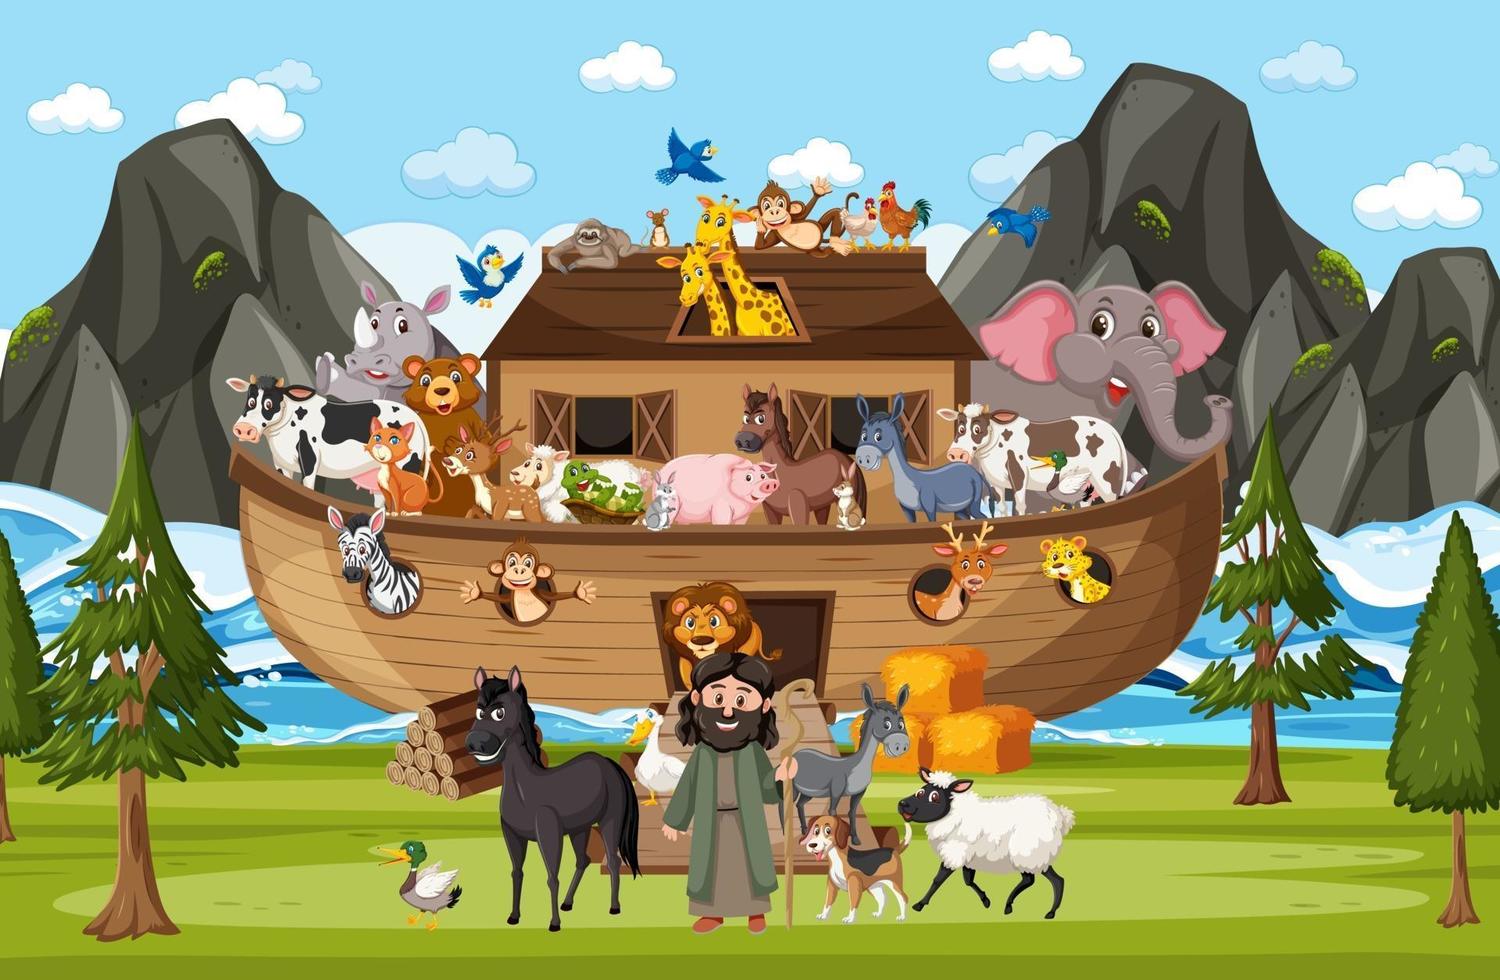 Arche Noah mit wilden Tieren in der Naturszene vektor